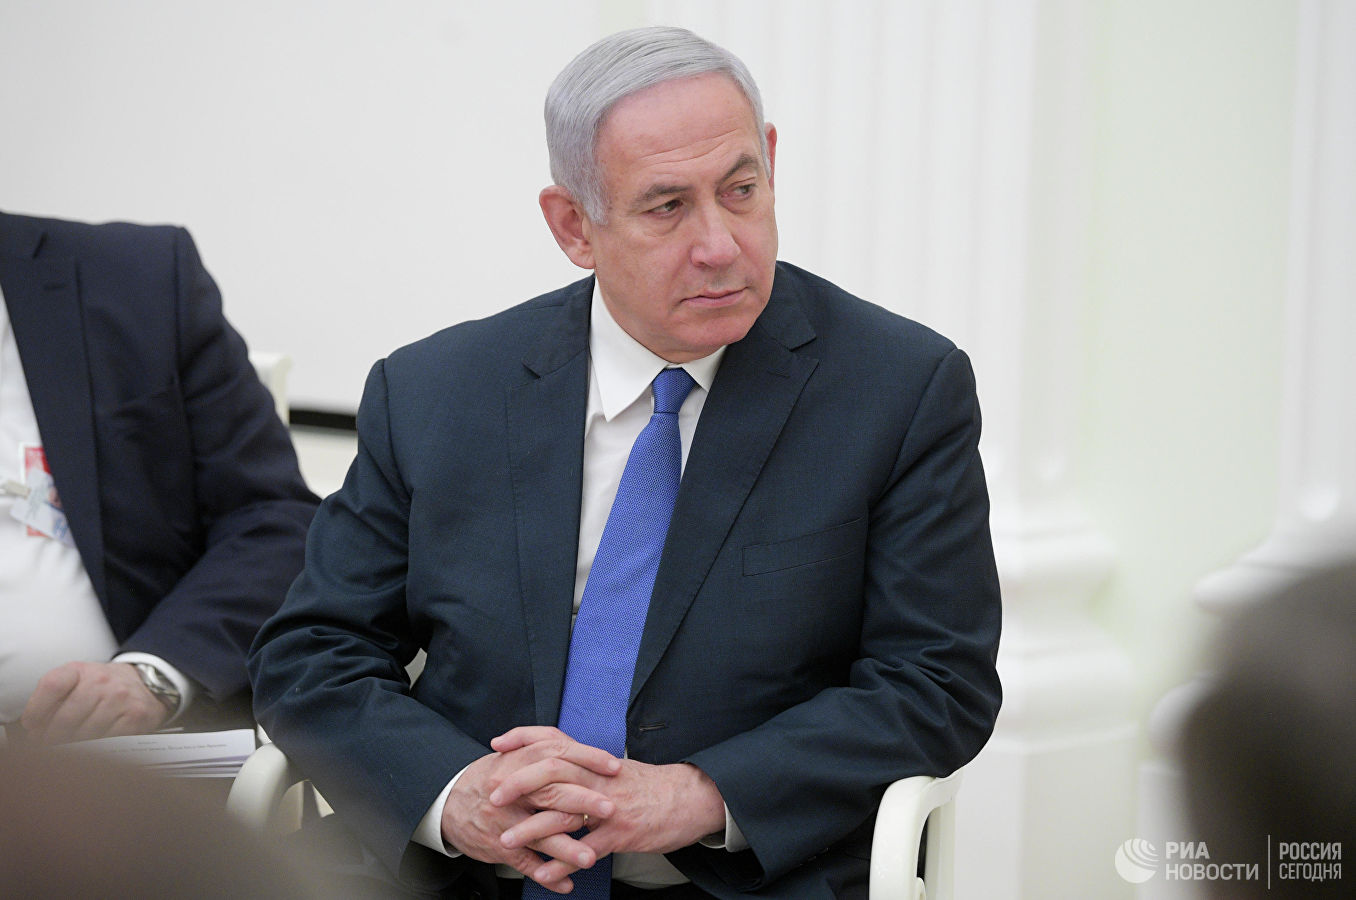 Իսրայելի վարչապետ Բենիամին Նեթանյահուն վիրահատության կենթարկվի